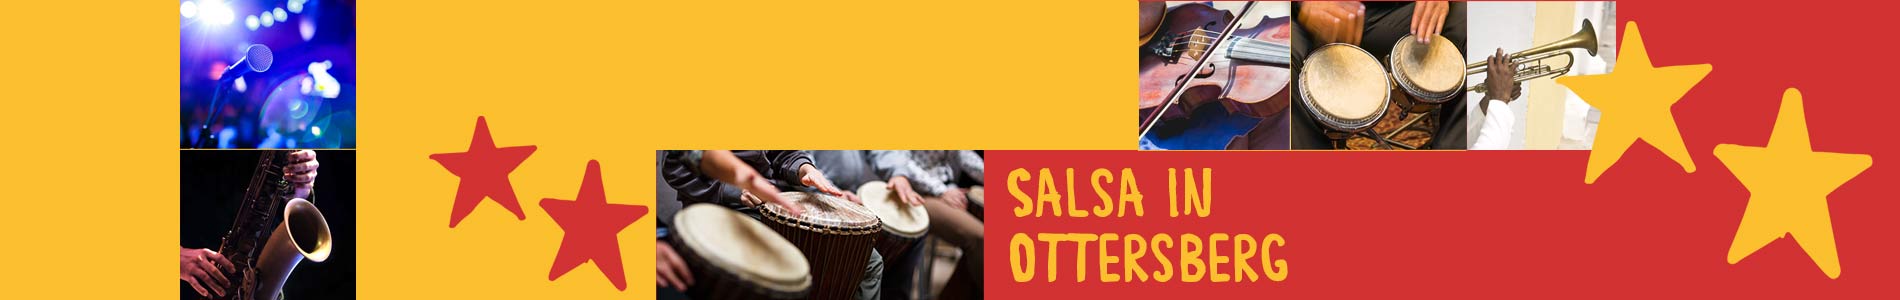 Salsa in Ottersberg – Salsa lernen und tanzen, Tanzkurse, Partys, Veranstaltungen